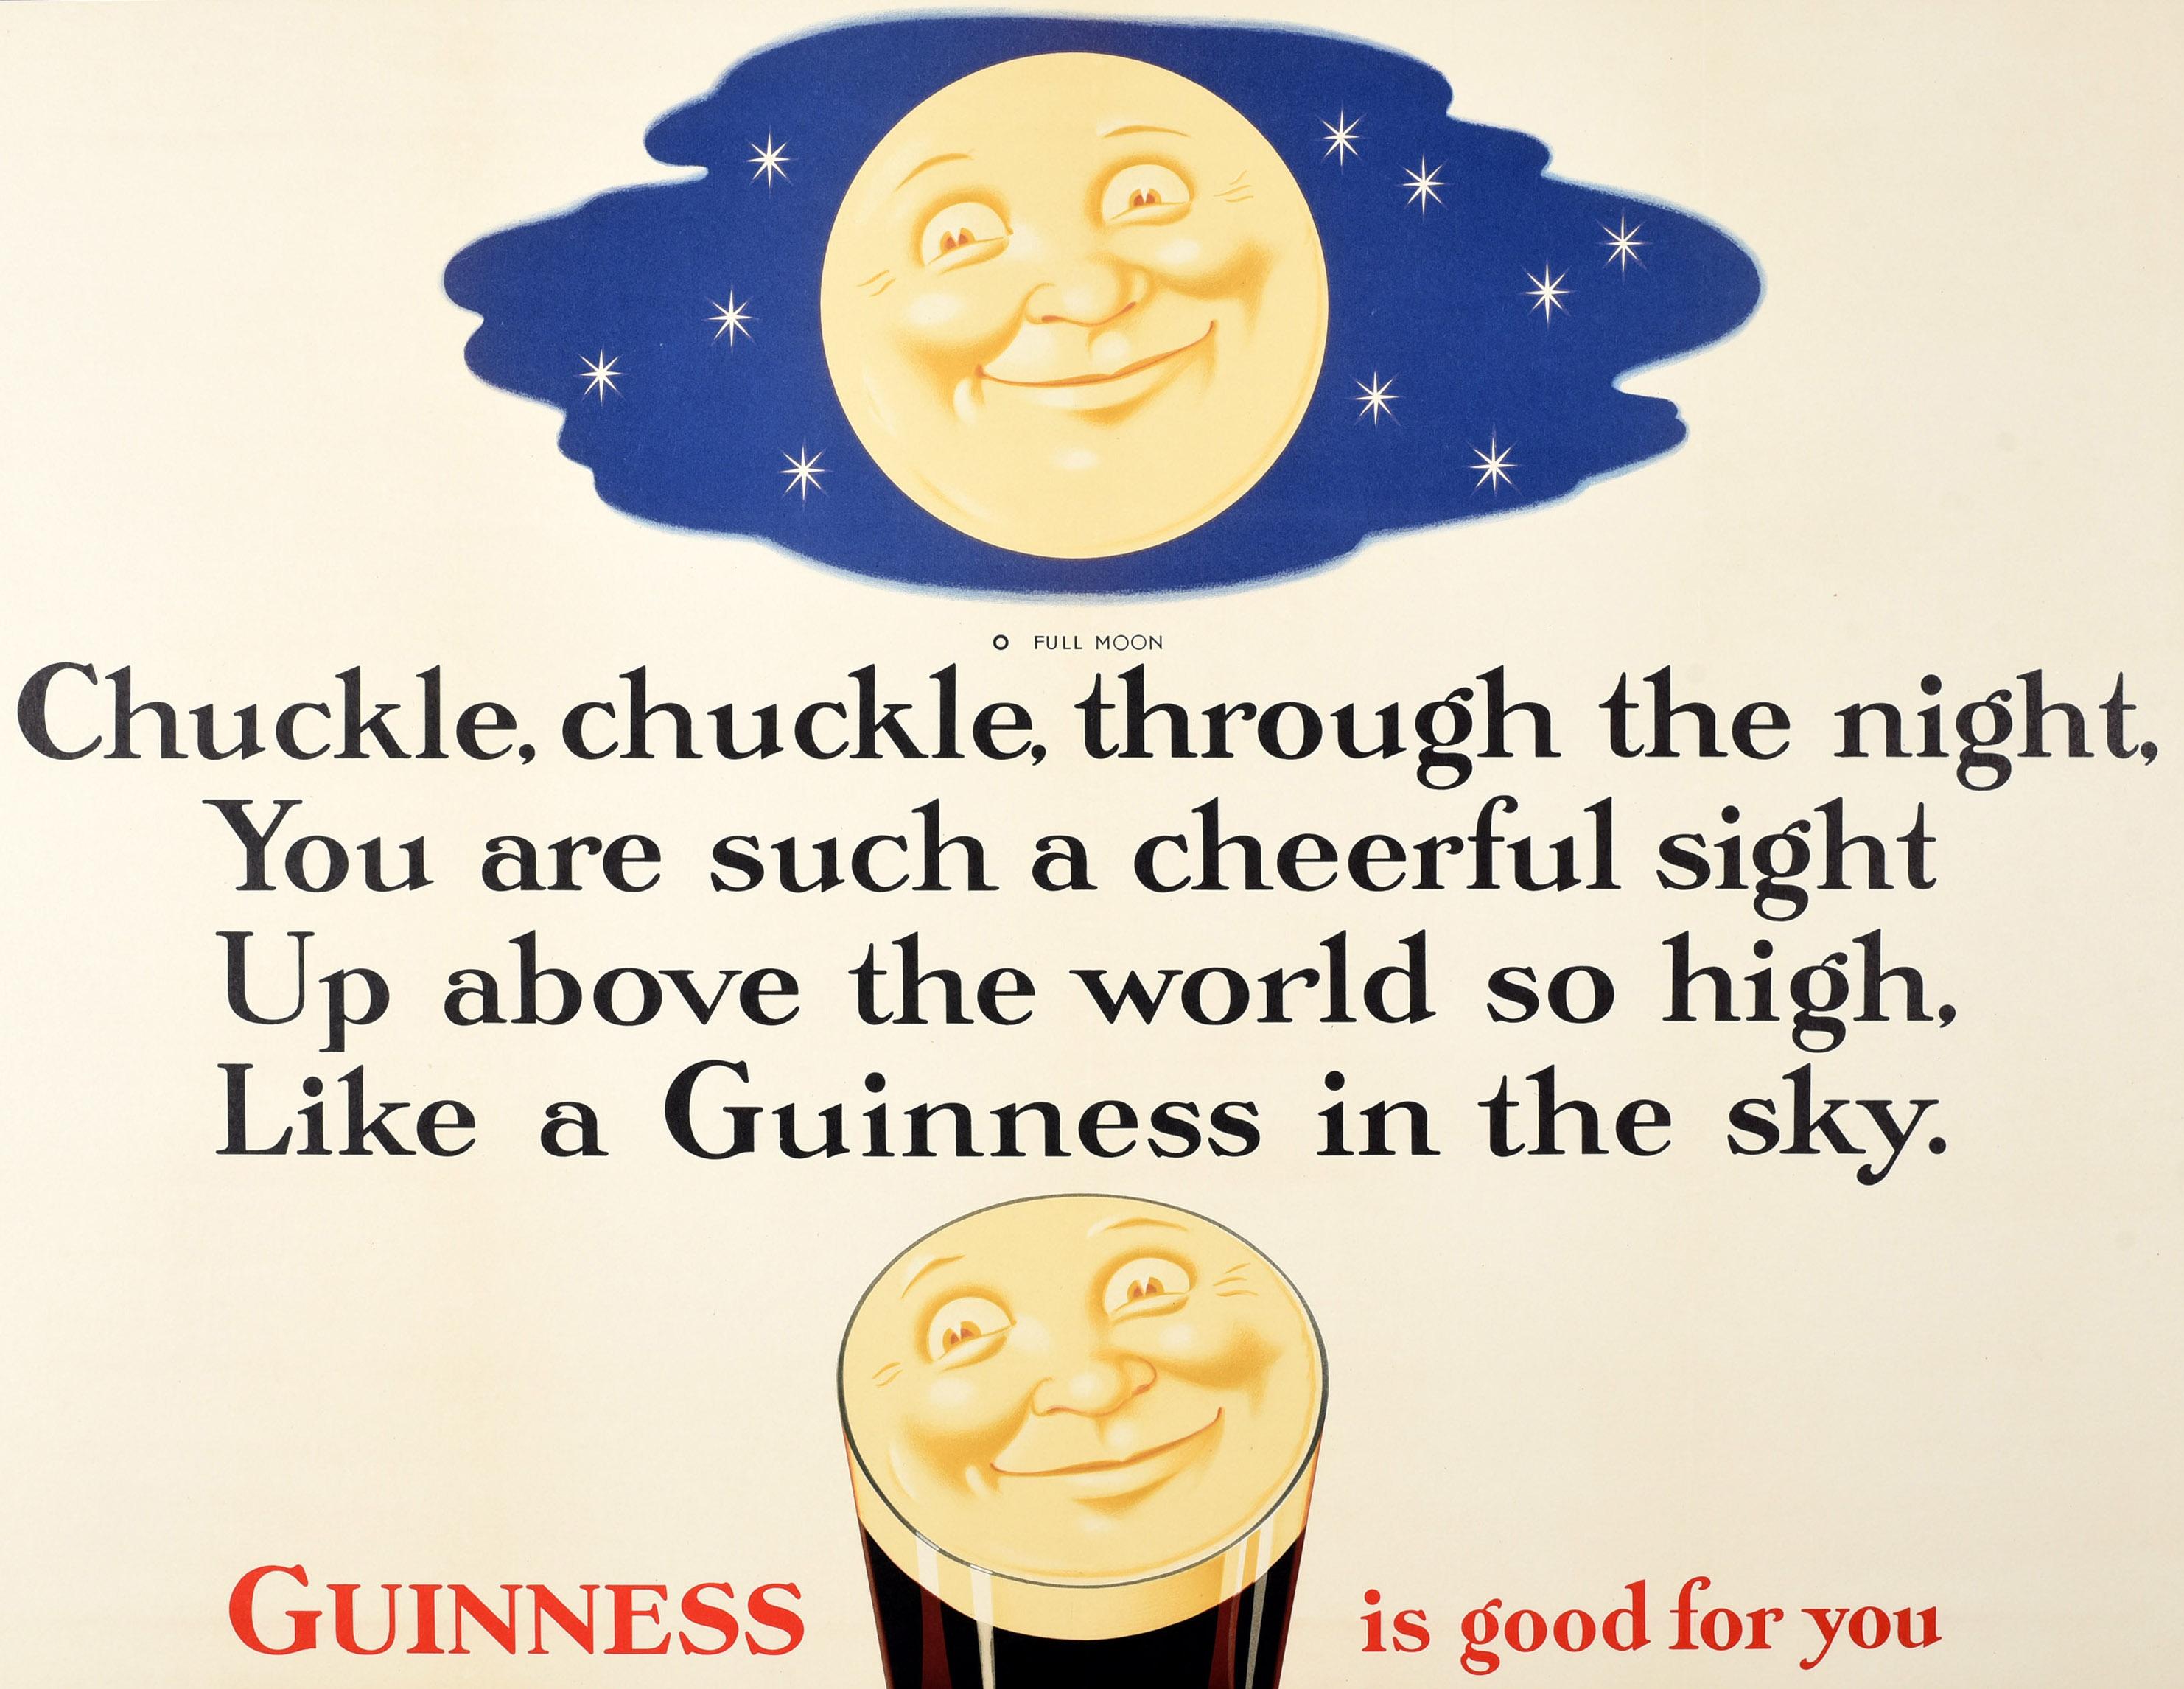 Affiche publicitaire vintage originale pour une boisson - Guinness is Good for You - présentant une image amusante et colorée de style dessin animé de l'emblématique visage souriant de Guinness reflété par le haut d'un verre de pinte avec une lune